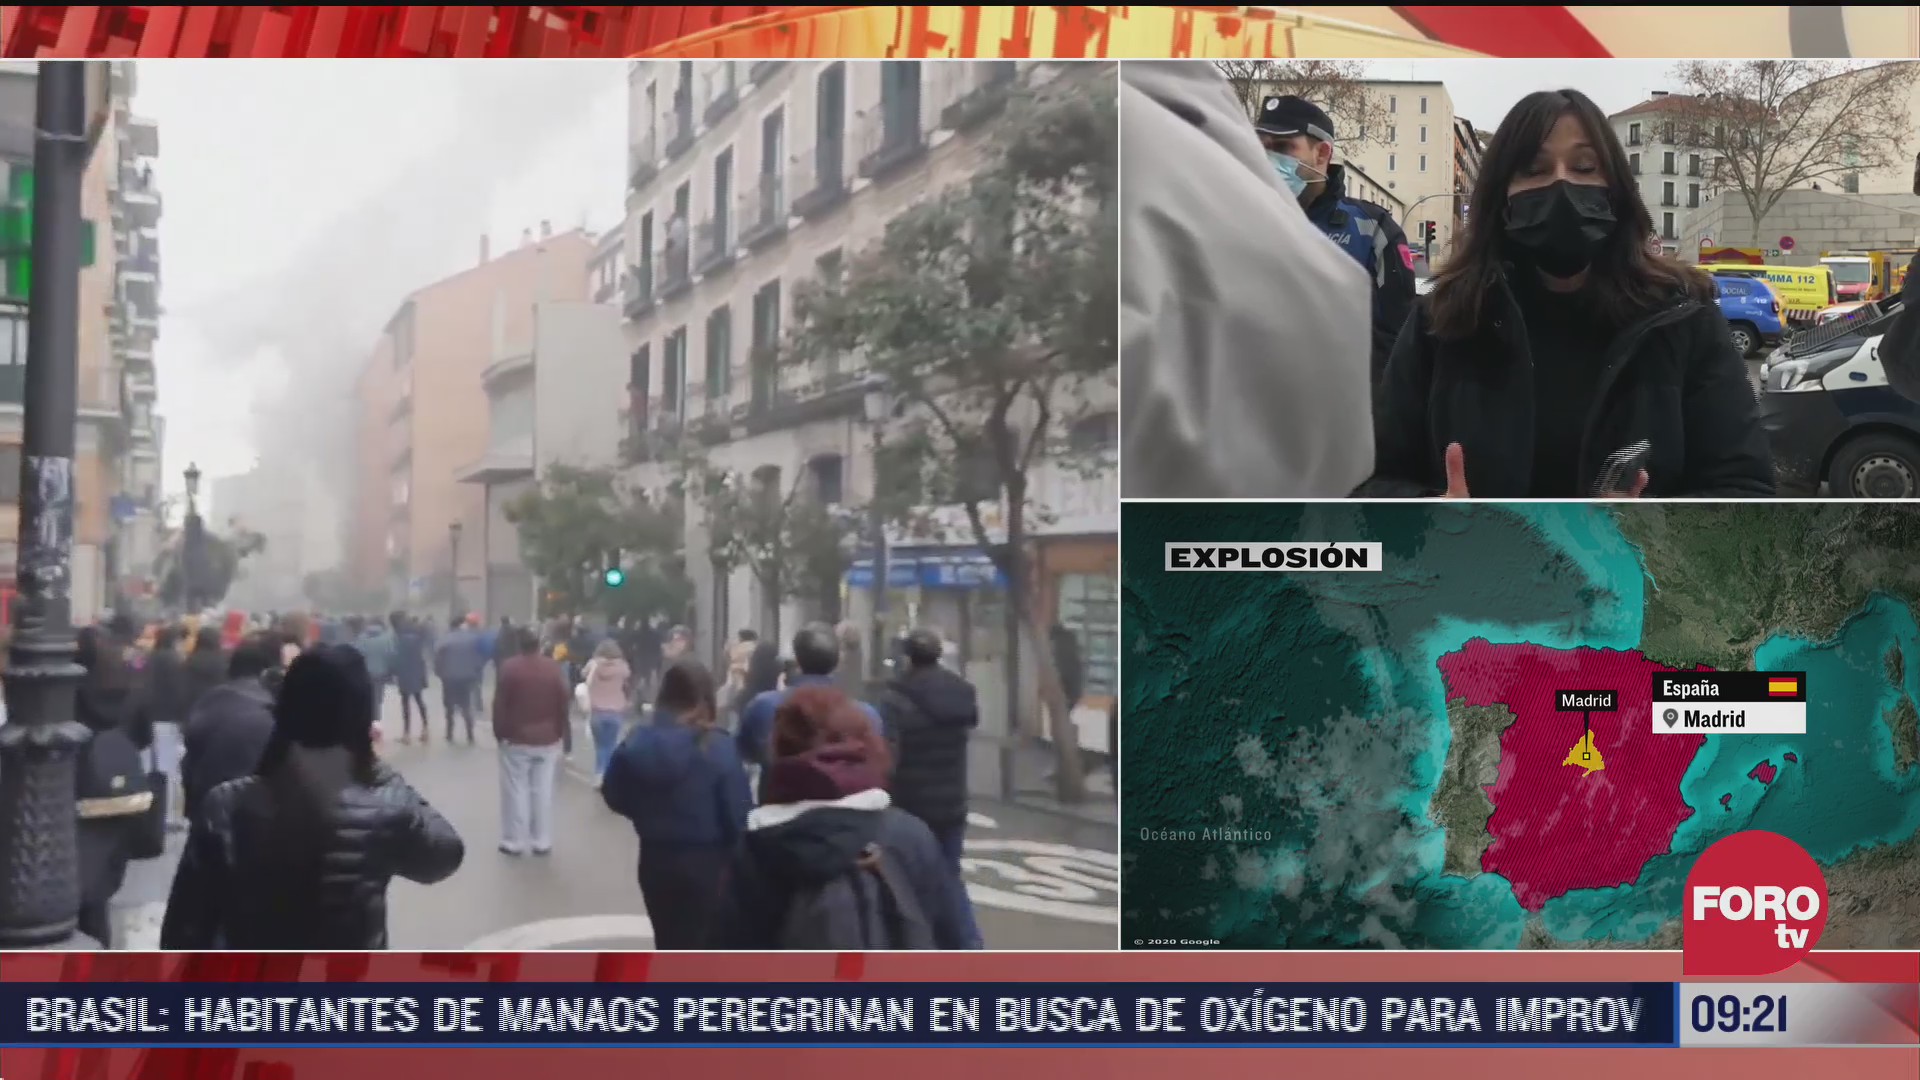 explosion en madrid fue presuntamente por fuga de gas hay varios muertos